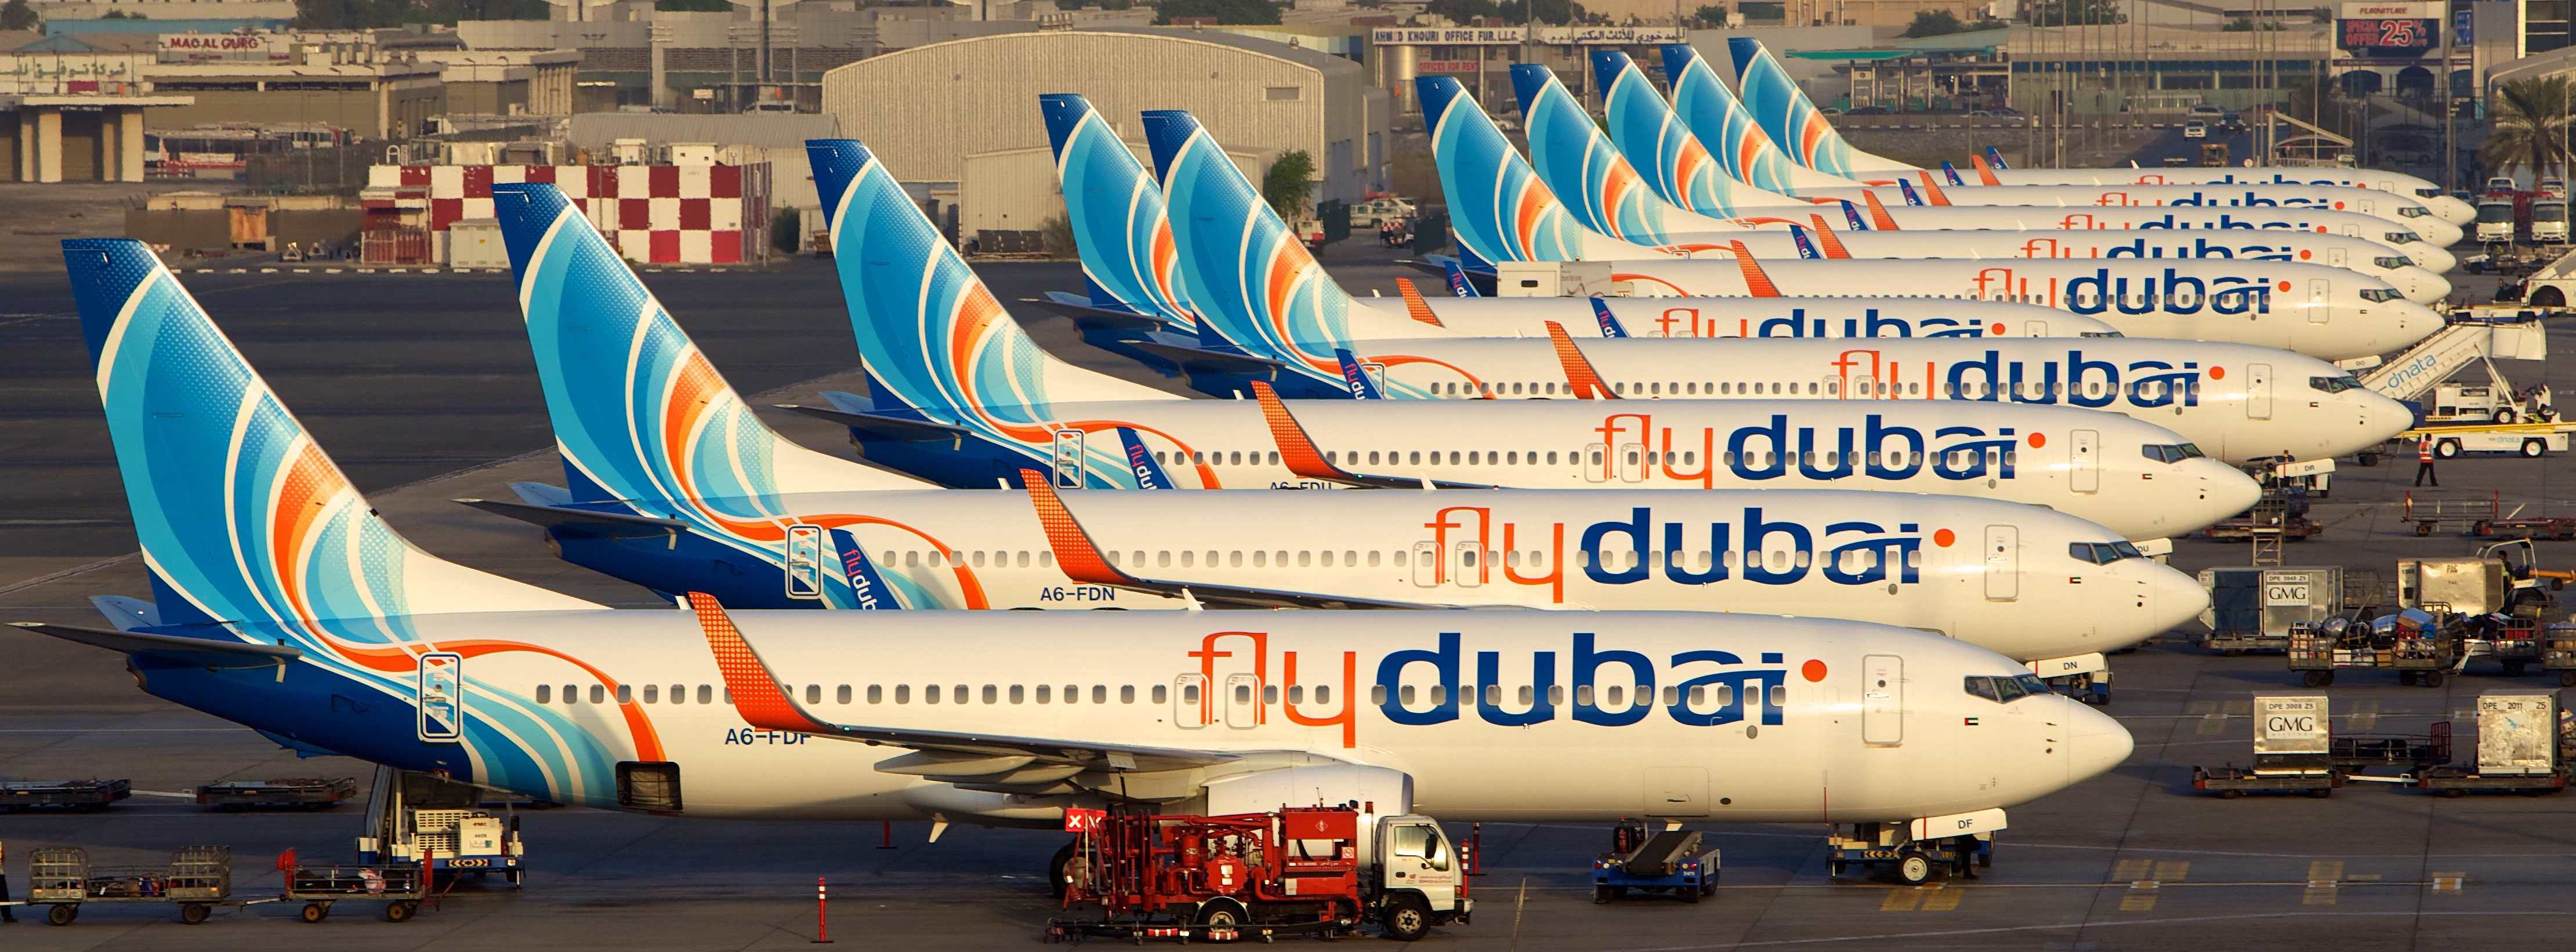 Flydubai resumes flights to Erbil